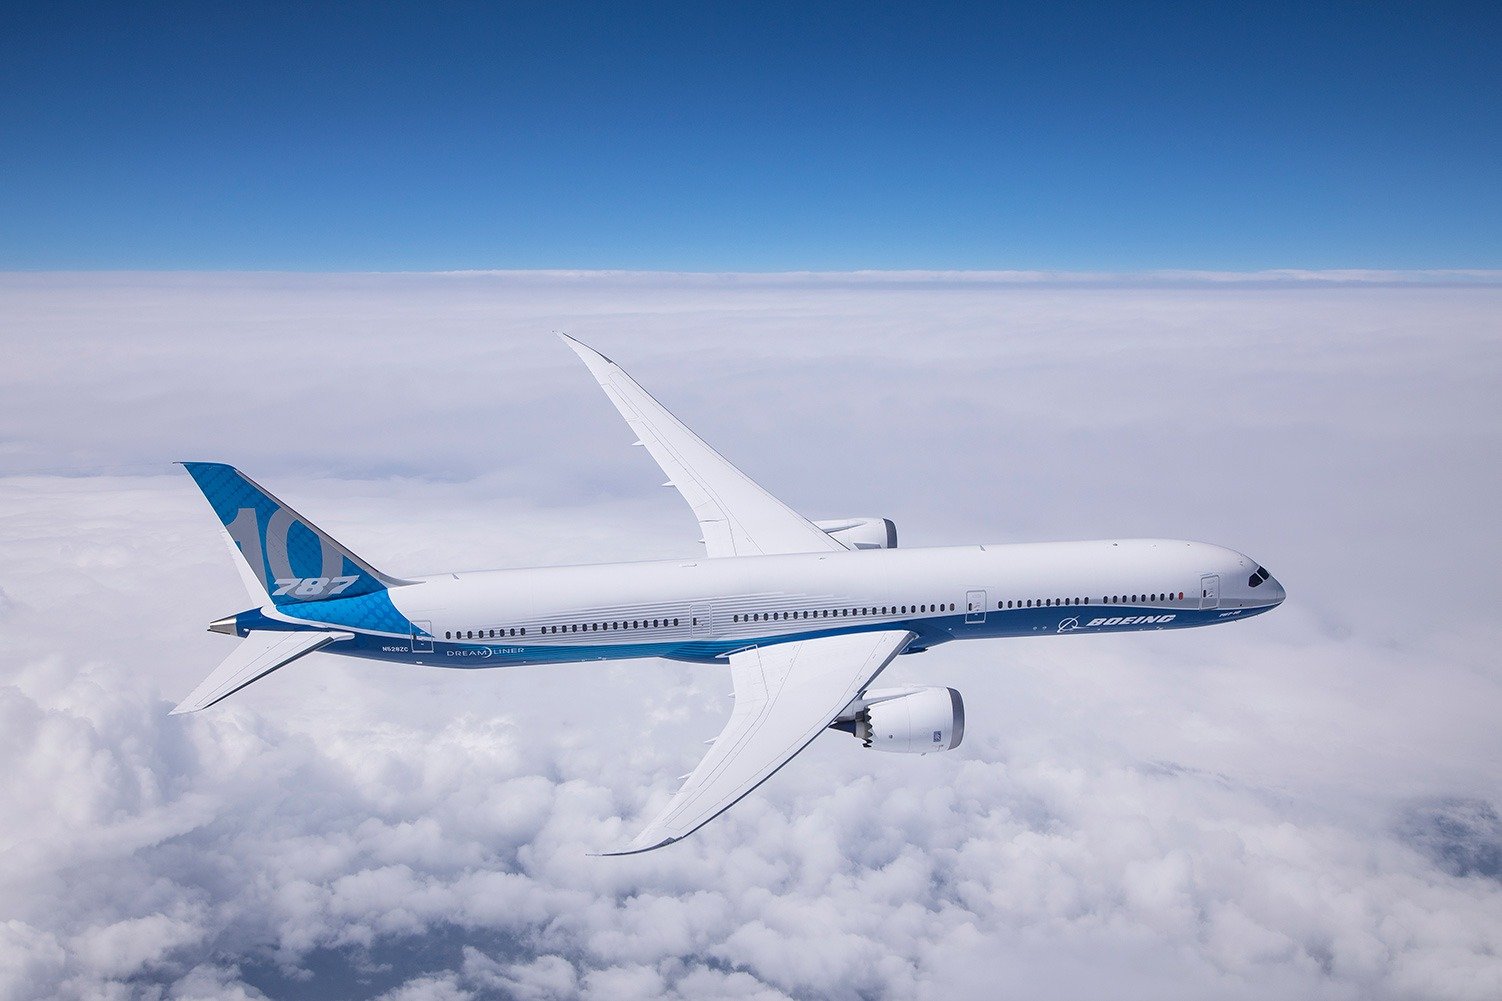 The new Boeing 787 Dreamliner